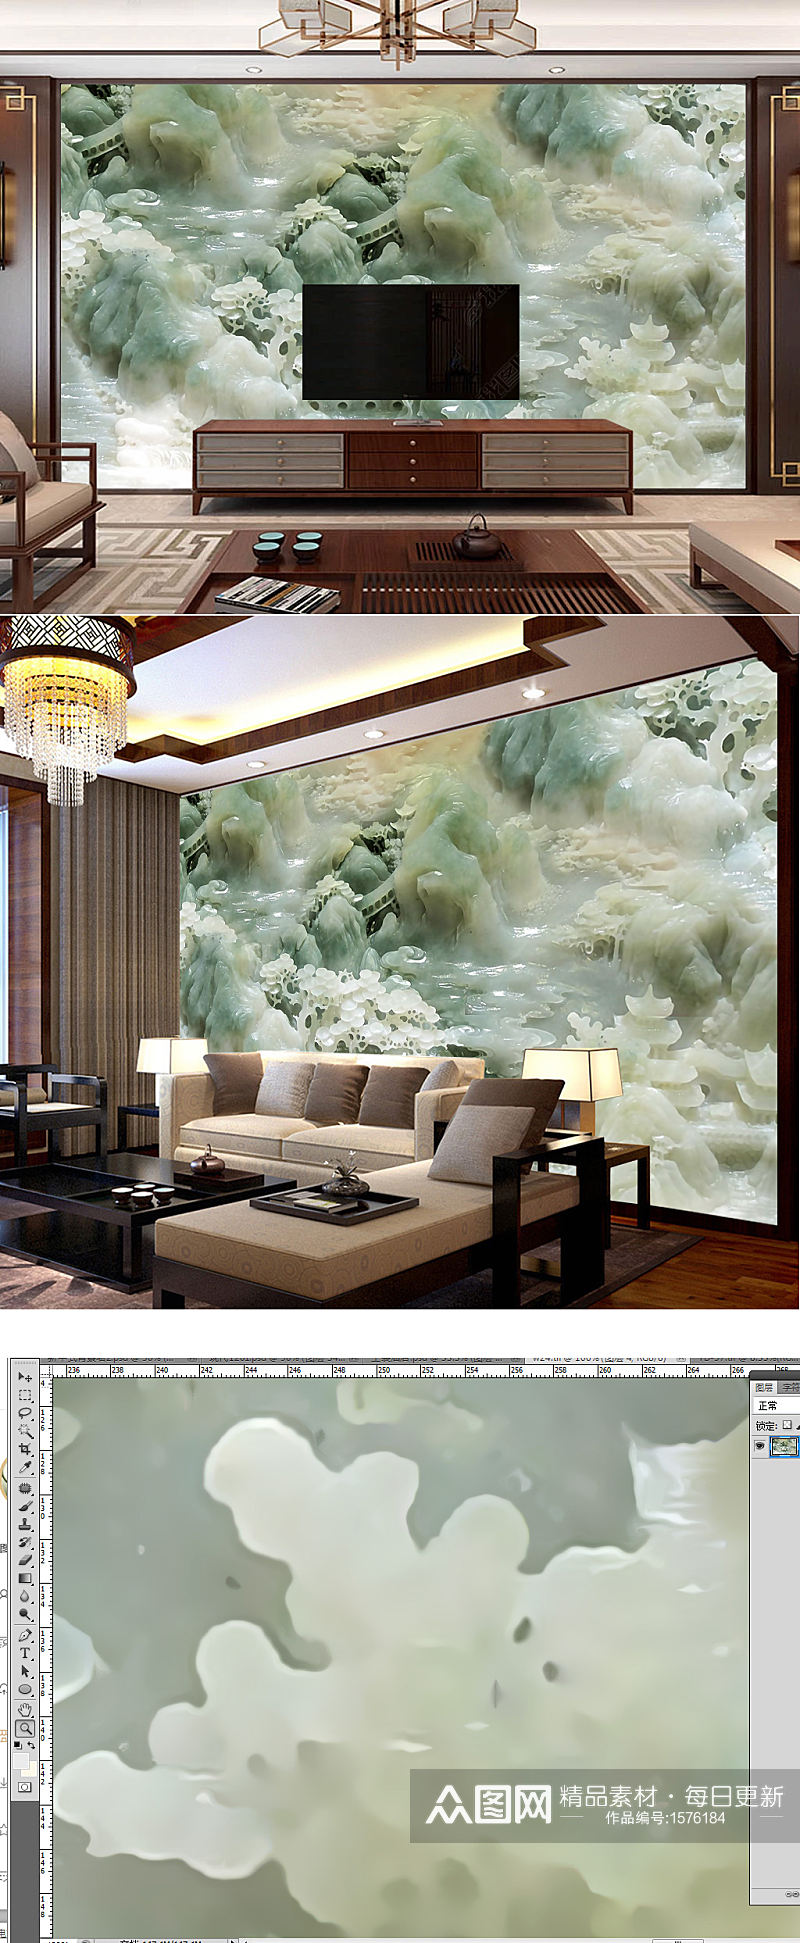 玉雕山水电视背景墙大型壁画素材